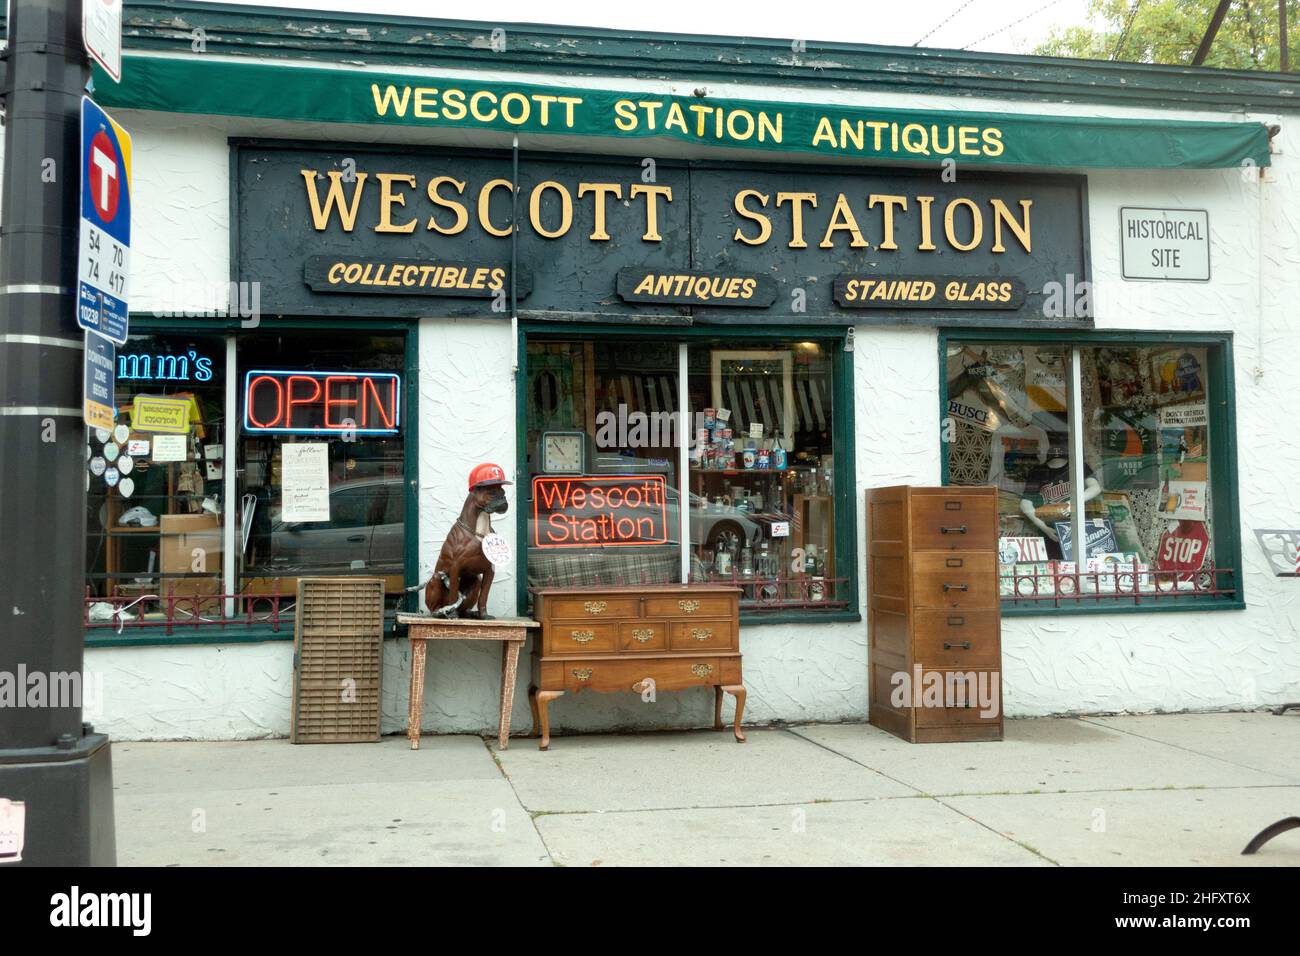 Magasin devant la boutique d'antiquités de la station Wescott sur West 7th Street.St Paul Minnesota MN États-Unis Banque D'Images